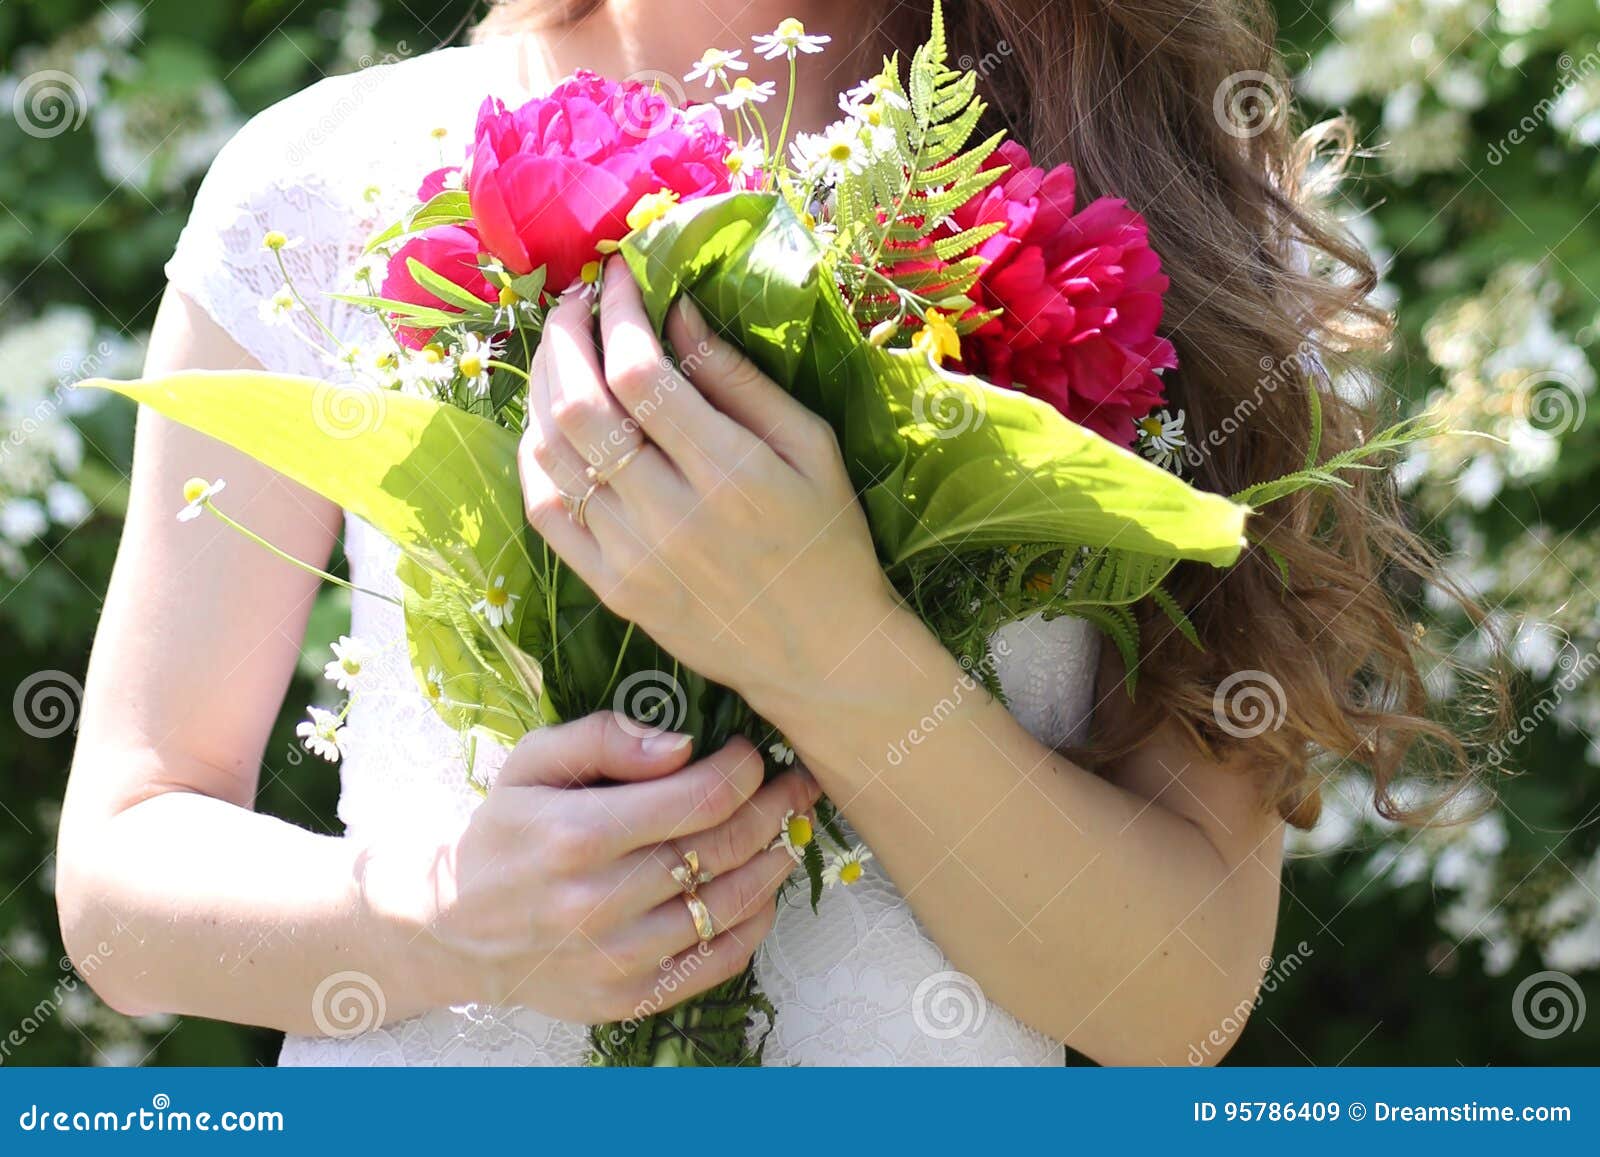 Песня держа в руках цветов букет. Женская рука держит цветок. Букет цветов в руках. Женская рука держит букет. Девушка держит в руках букет.